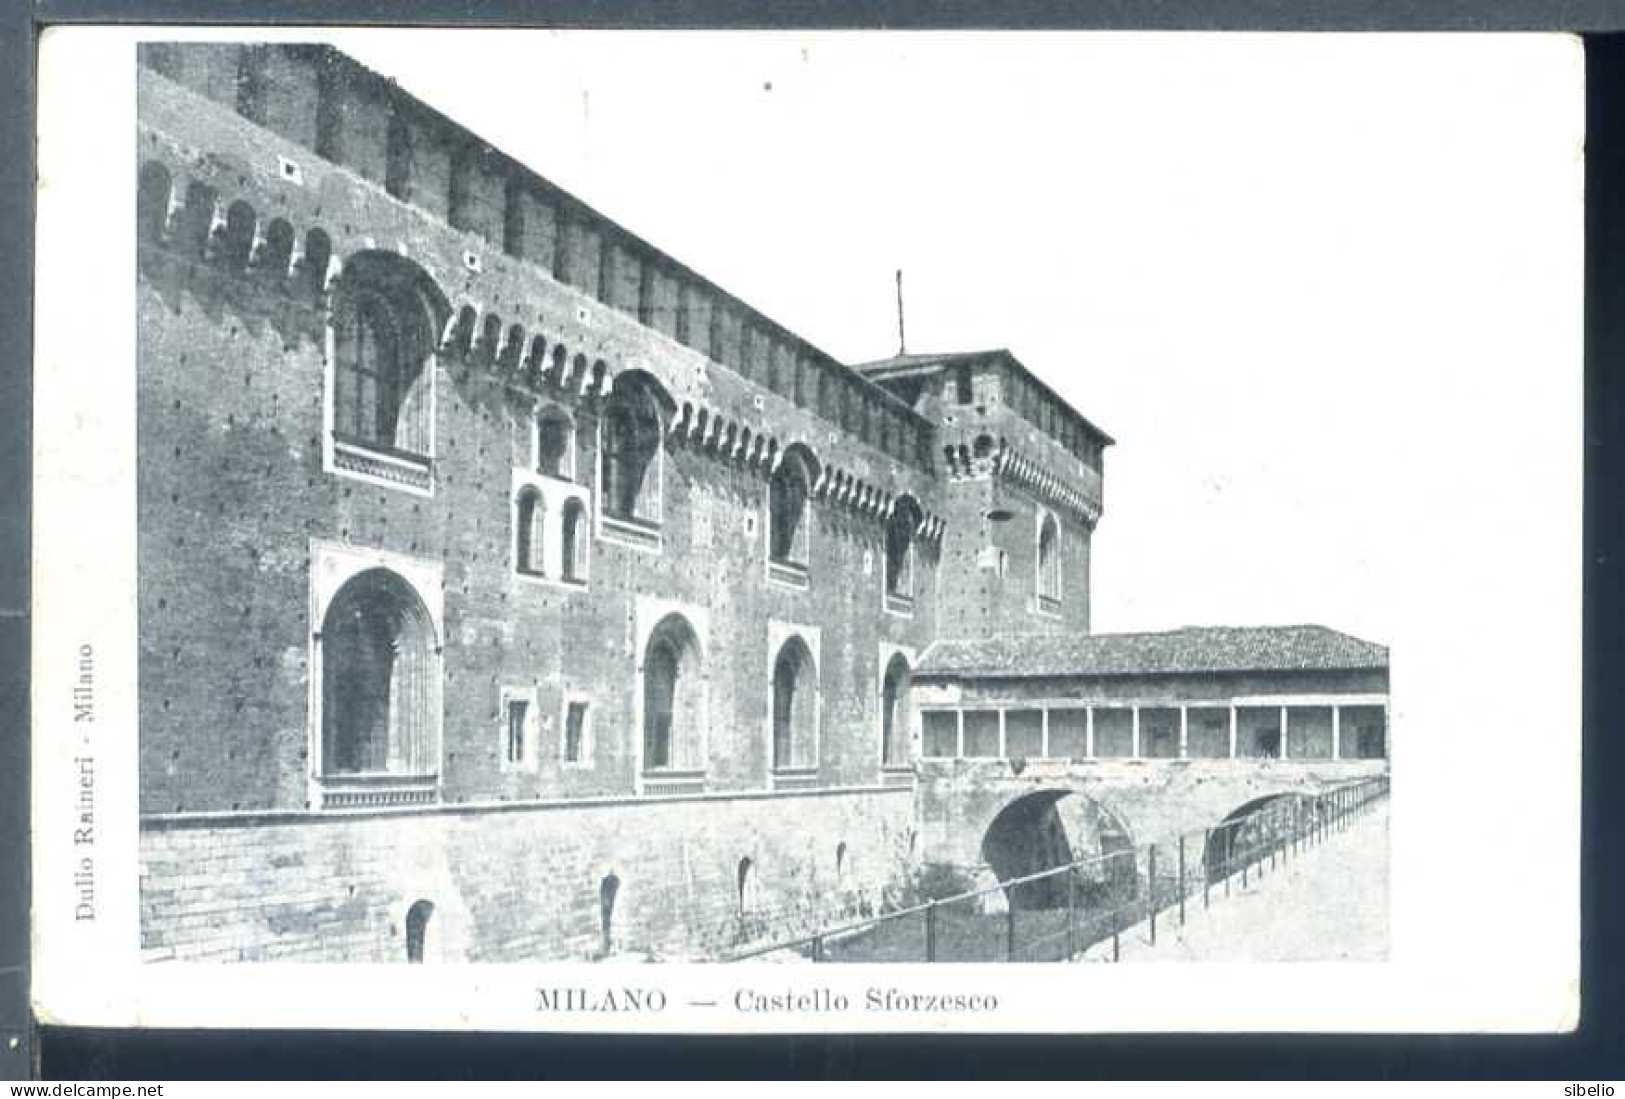 Milano - dieci cartoline antiche - rif. 4